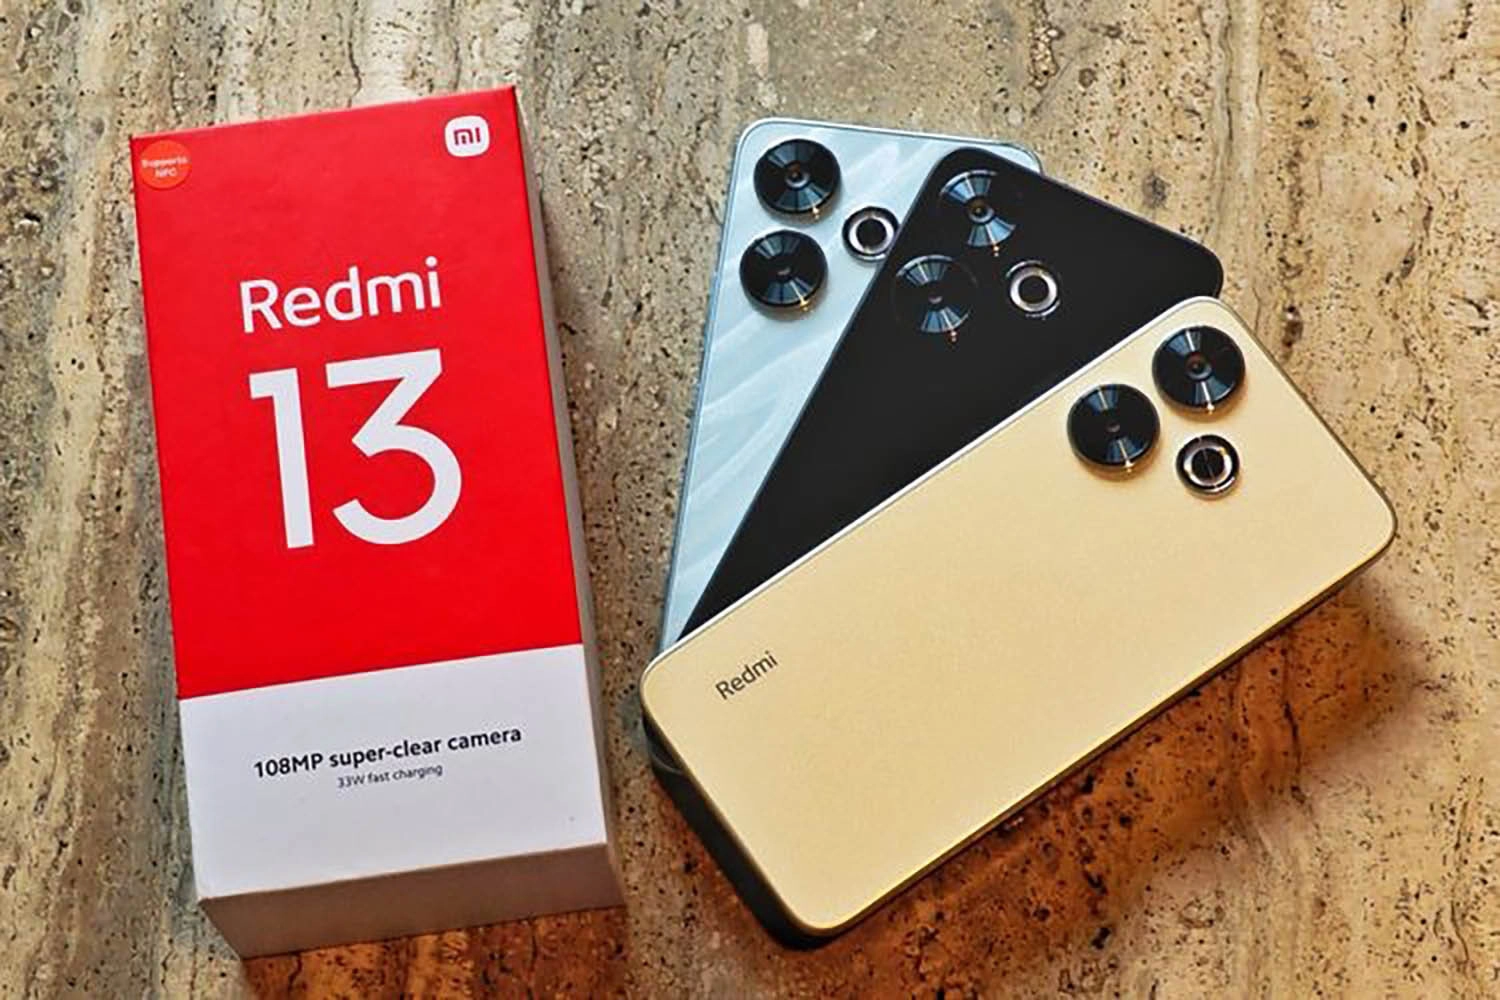 Gần đây, công ty Trung Quốc đã mở bán Redmi 13 tại châu Âu mà không đi kèm theo củ sạc